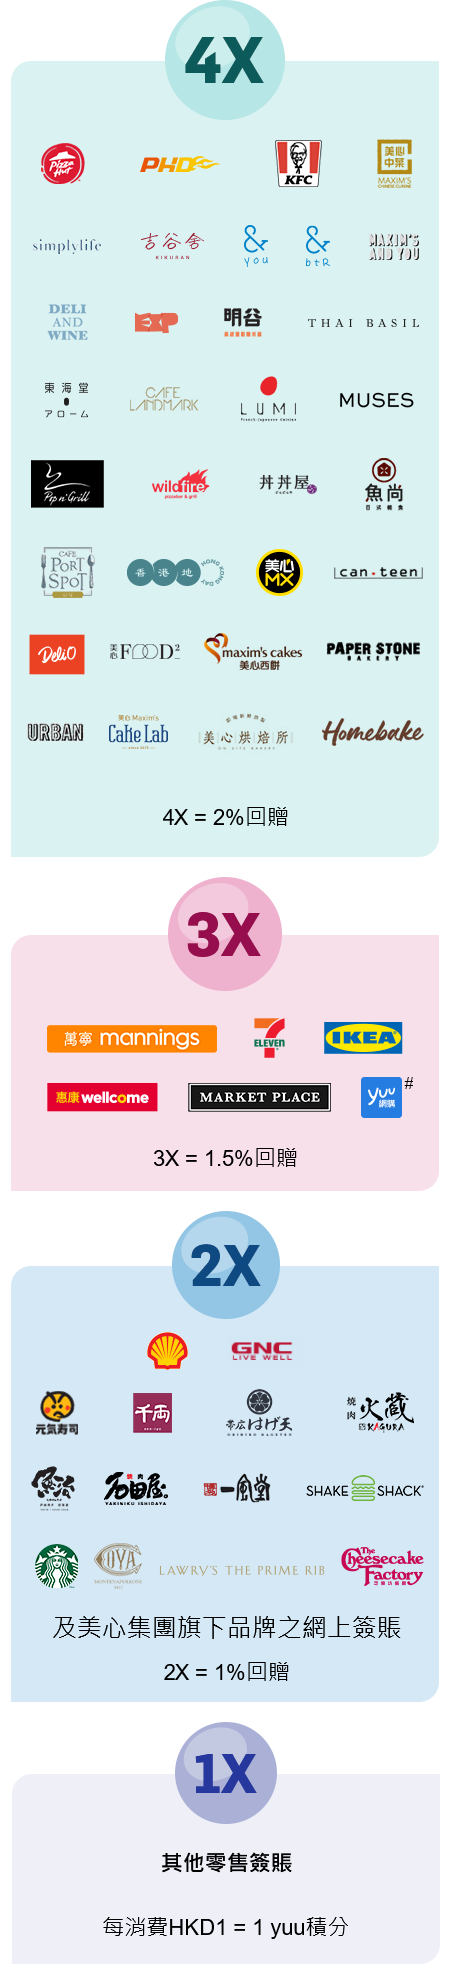 其他零售簽賬每消費 HK$1 = 1 yuu積分, 美心集團旗下其他品牌之食肆及分店 2X = 1%回贈, 3X = 1.5%回贈, 4X = 2%回贈